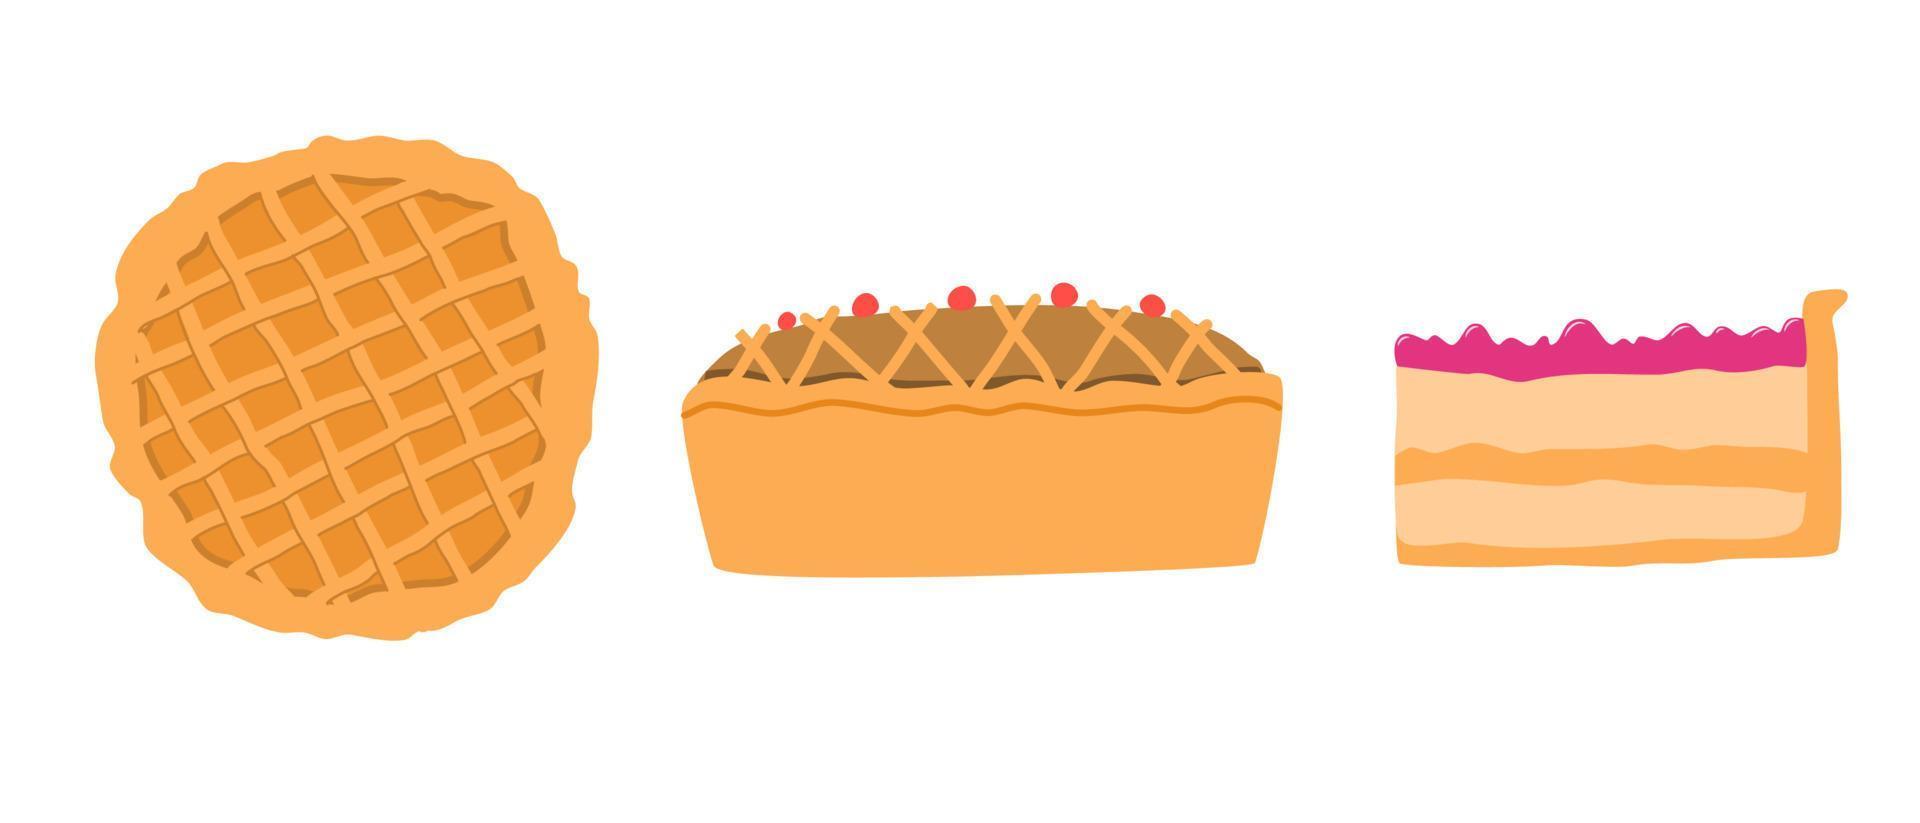 tortas caseiras vector ilustração de comida. sobremesa tradicional de ação de graças. desenho de pedaço de torta. símbolo de férias de outono.